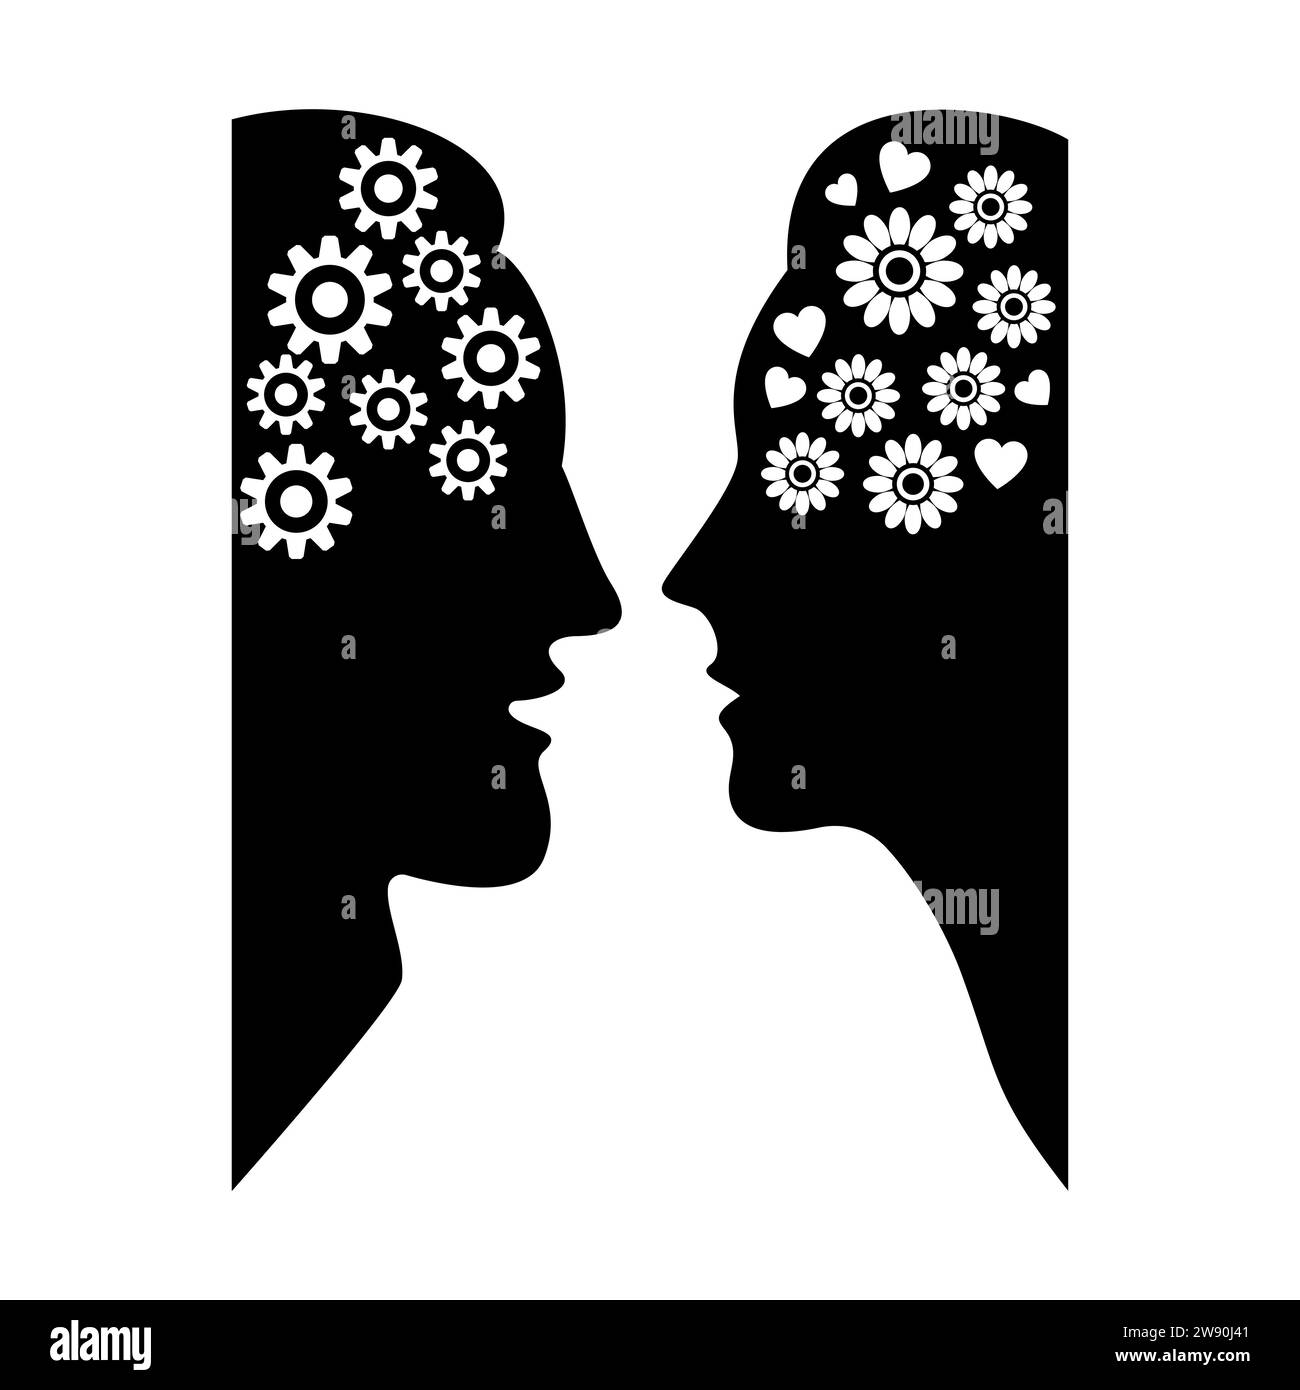 Homme avec des engrenages et femme avec des fleurs et des coeurs dans les têtes. Le concept de pensée différente entre un homme et une femme. Silhouettes noires de visages. Illustration de Vecteur